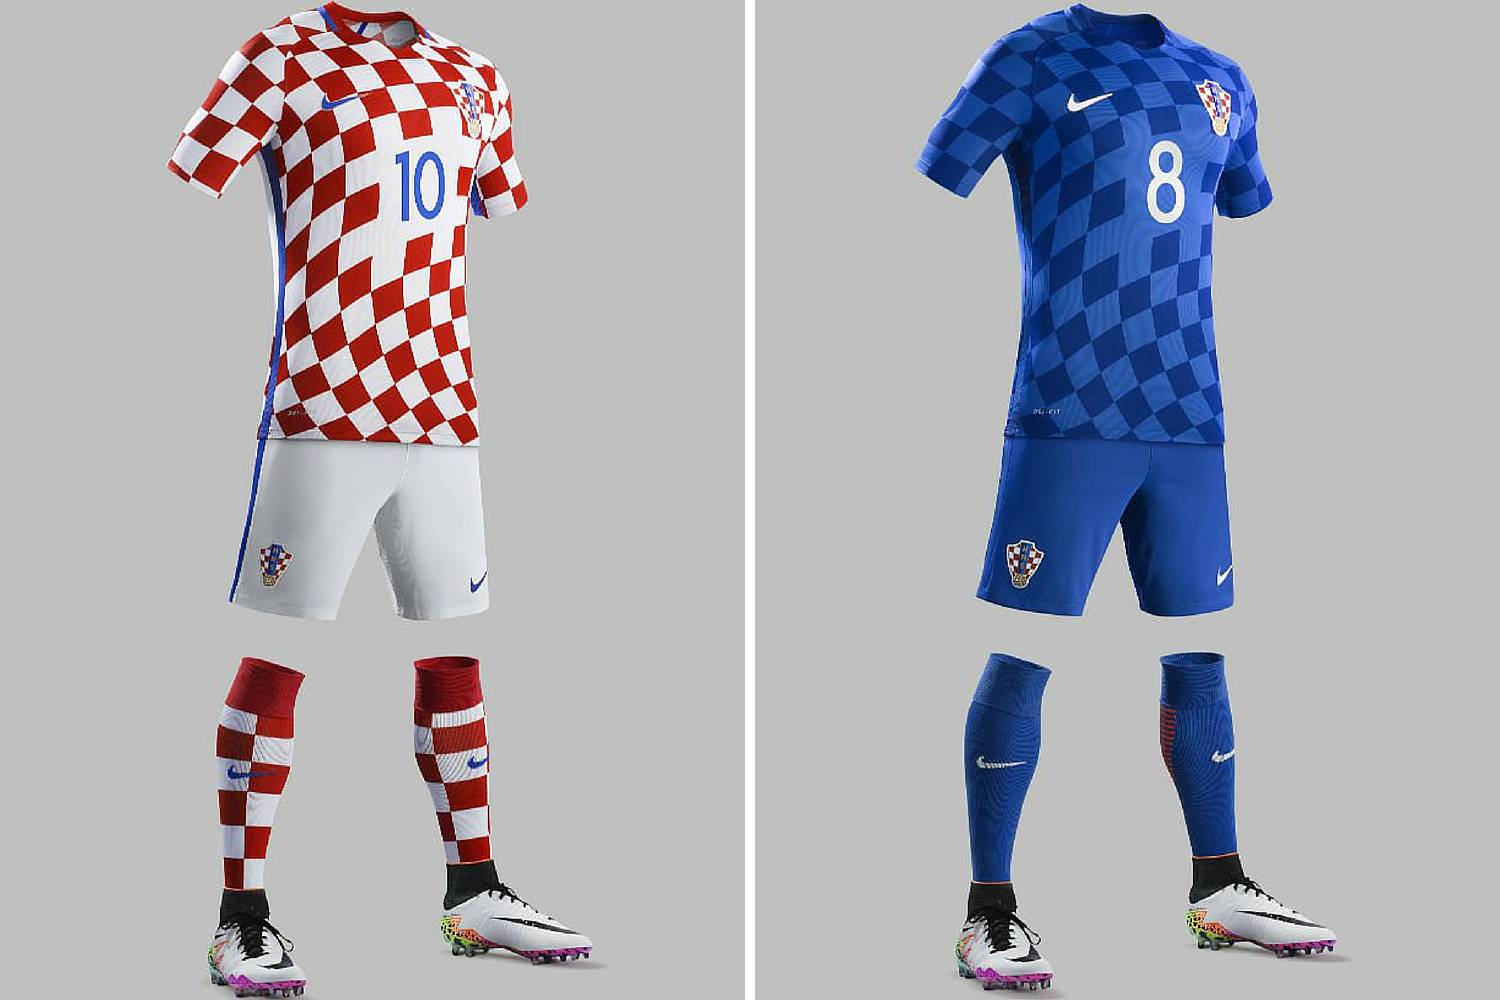 EU želi mijenjati grb na dresu hrvatske nogometne repke?!